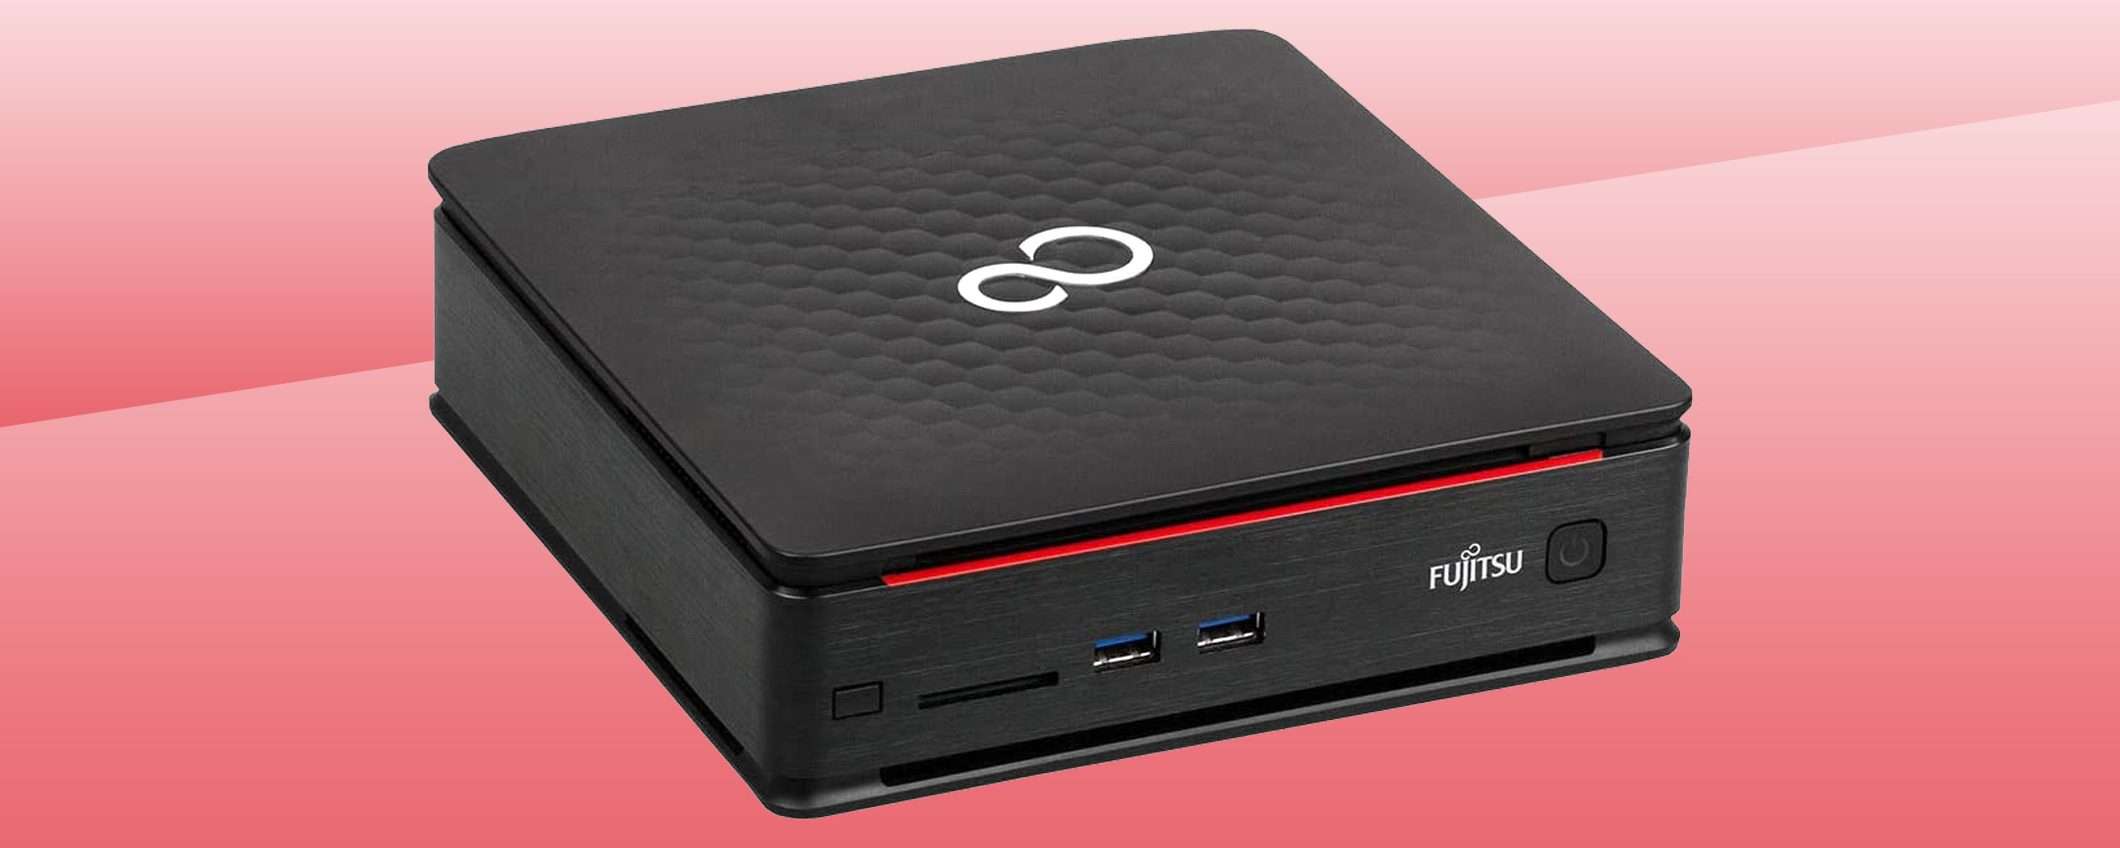 Fujitsu Esprimo Q920: il Mini PC a soli 99 euro